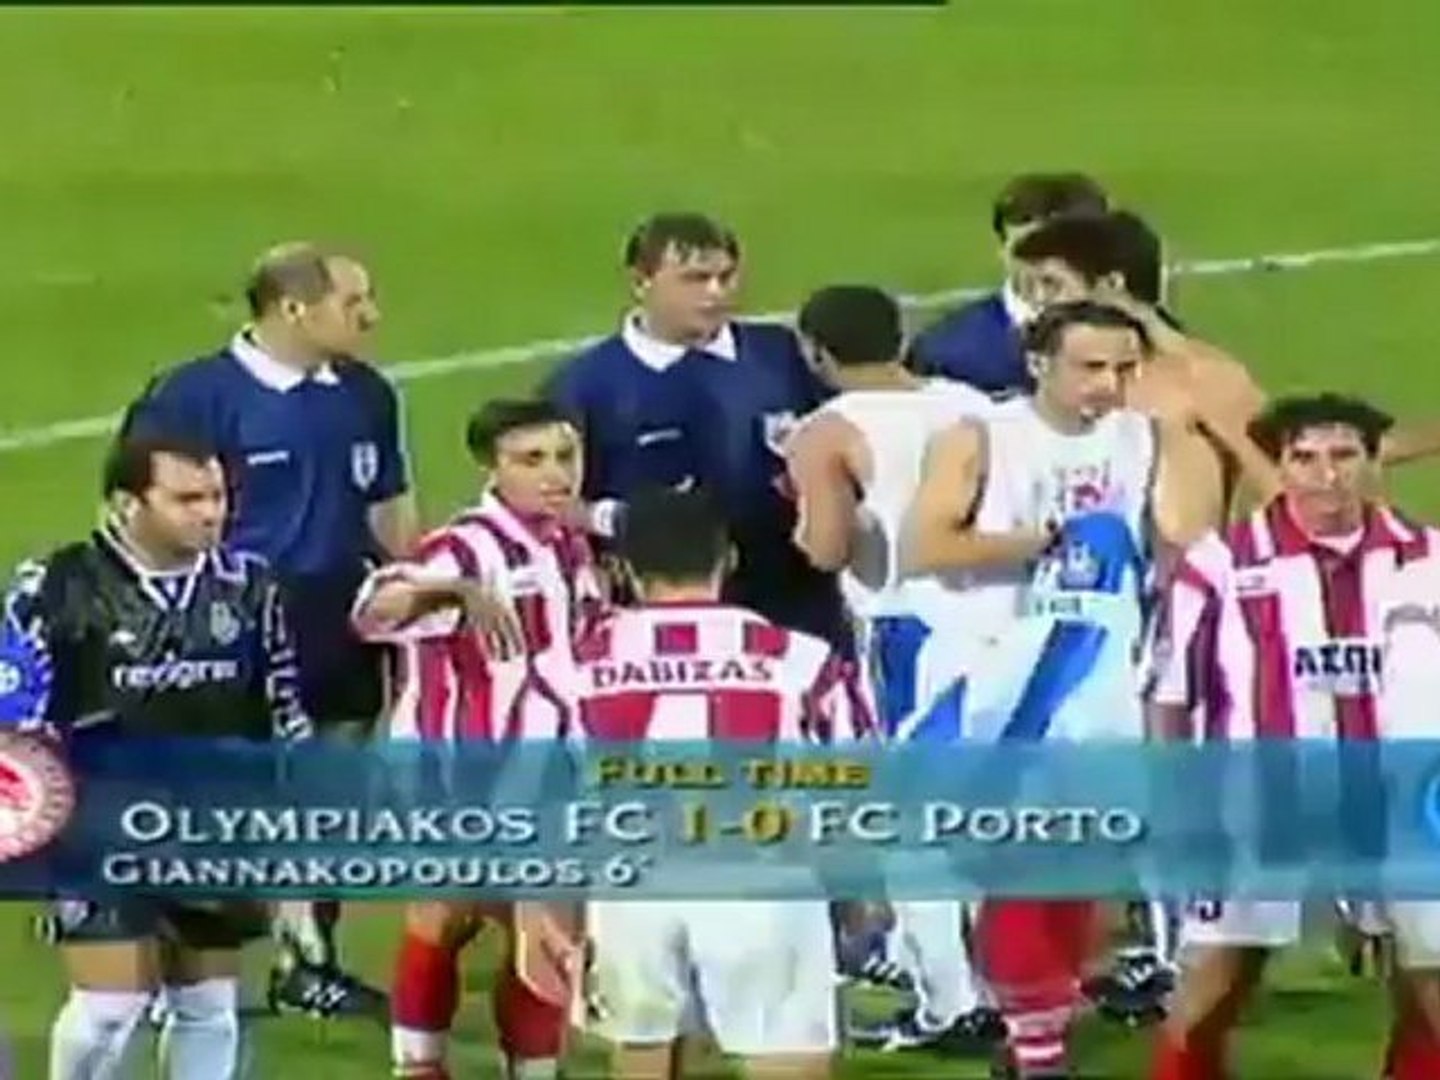 Olympiakos-Porto 1-0 - video Dailymotion